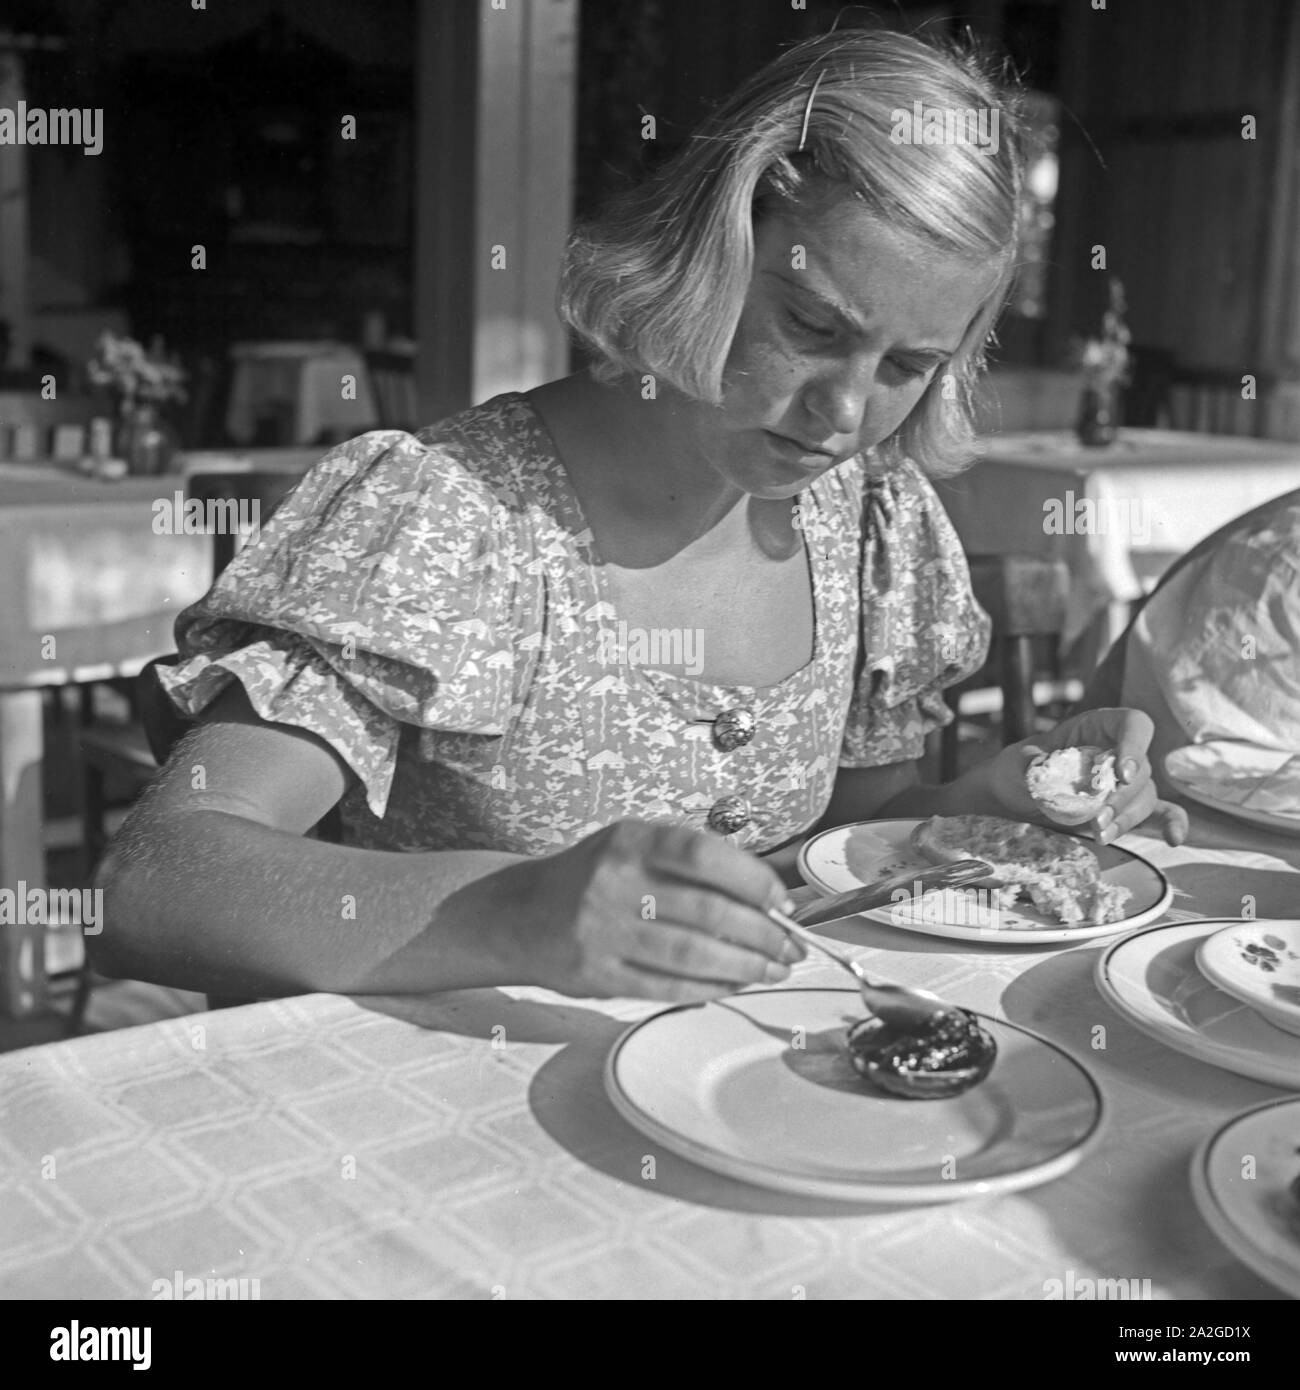 Eine junge Frau nimmt ein Brötchen zum Frühstück mit Marmelade, 1930er Jahre. Une jeune femme ayant un rouleau avec de la confiture pour le petit déjeuner, 1930. Banque D'Images